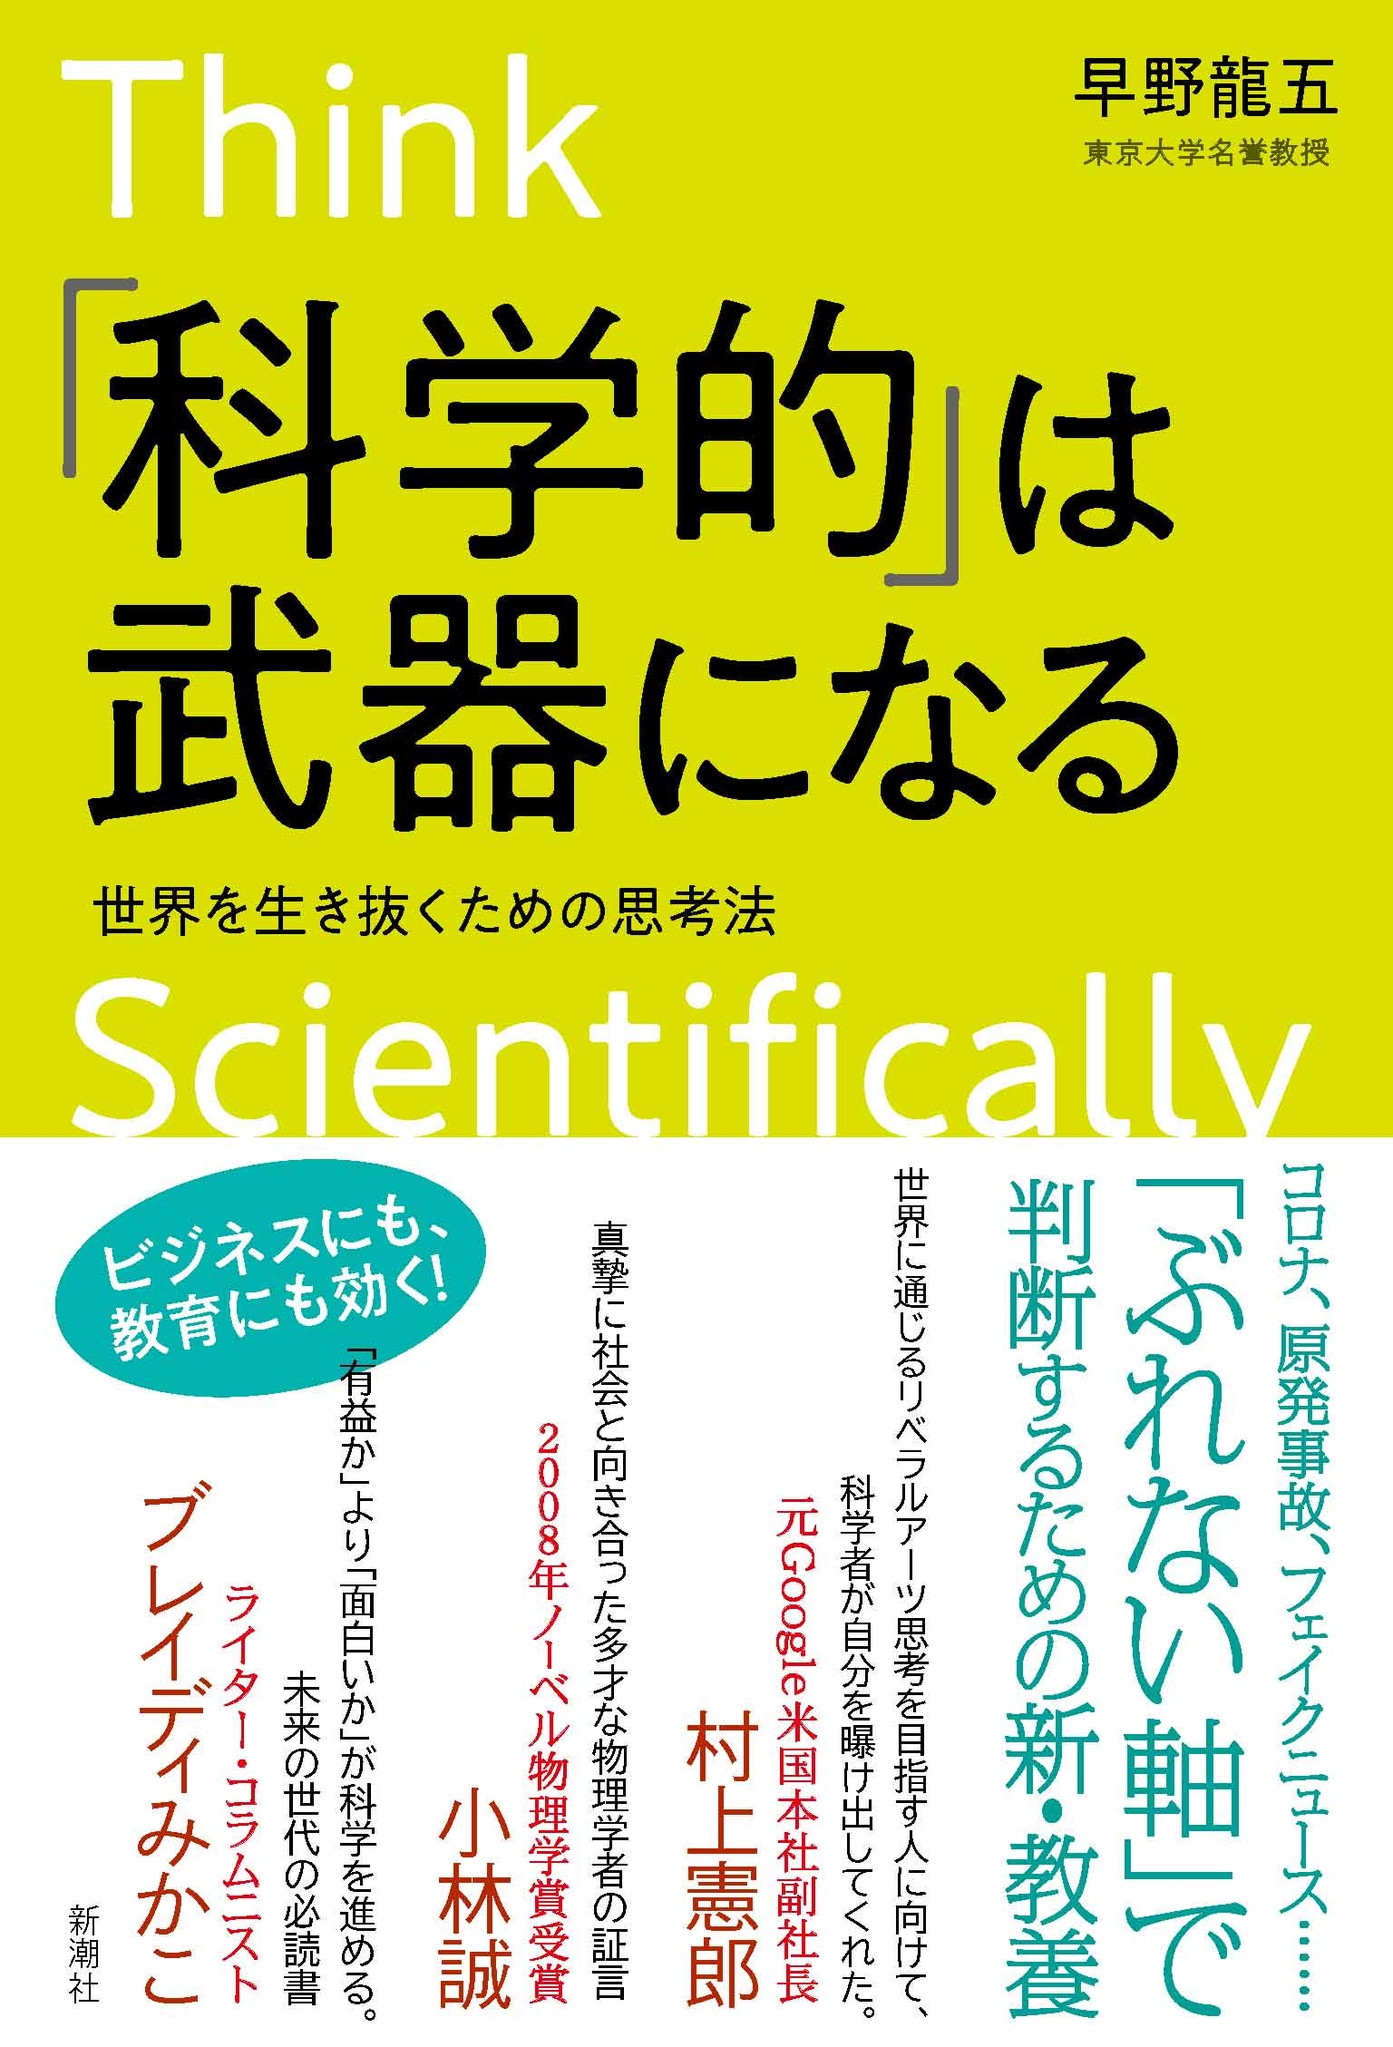 東京大学名誉教授 世界的物理学者 早野龍五さん初の単著 科学的 は武器になる 本日発売 株式会社新潮社のプレスリリース